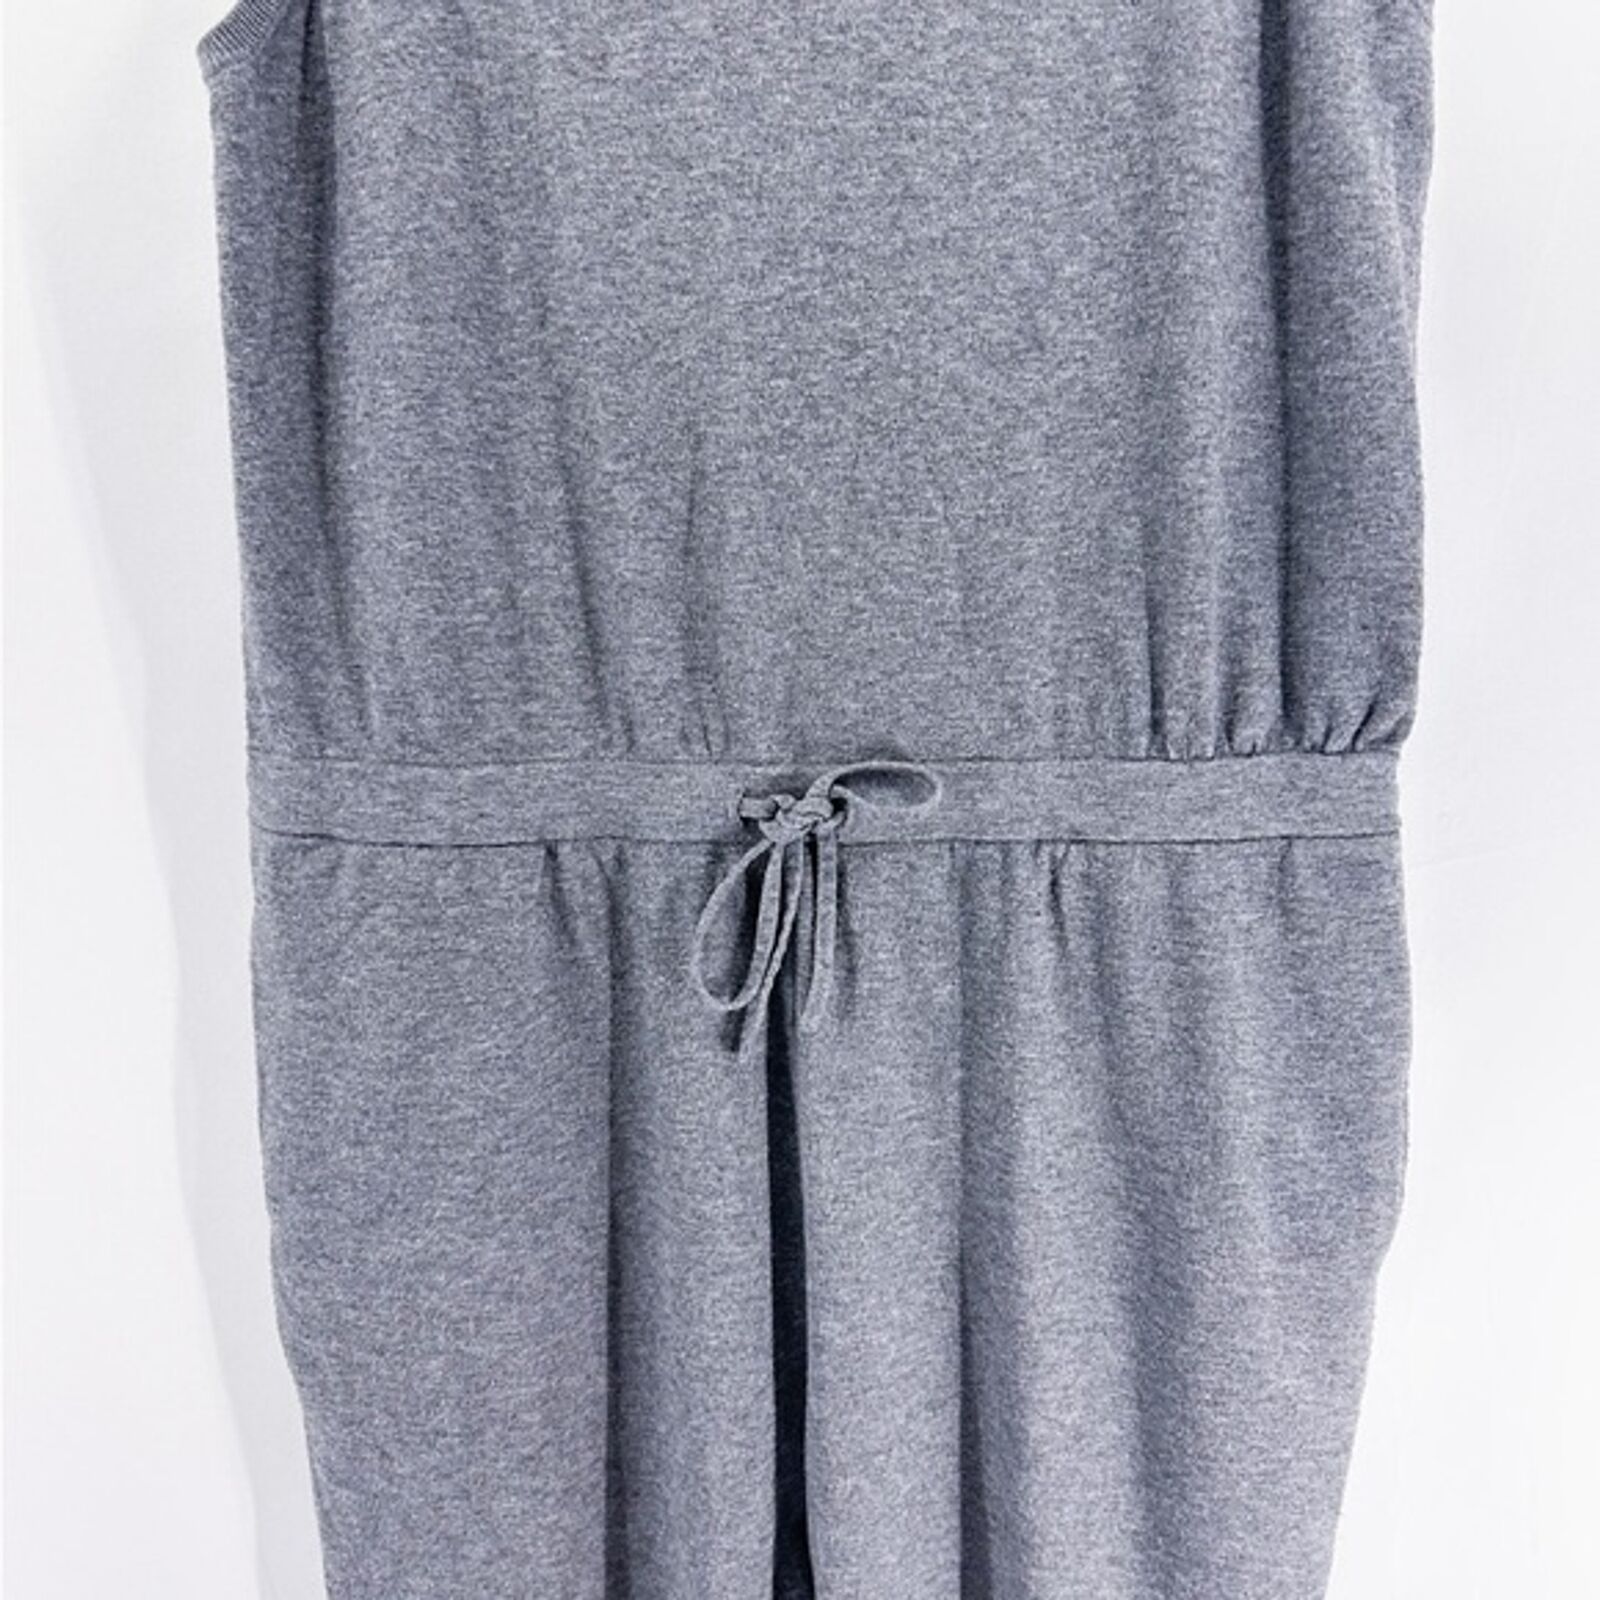 Aritzia Babaton Gray Jersey Knit Sleeveless Jumpsuit Drawstring Waist Large